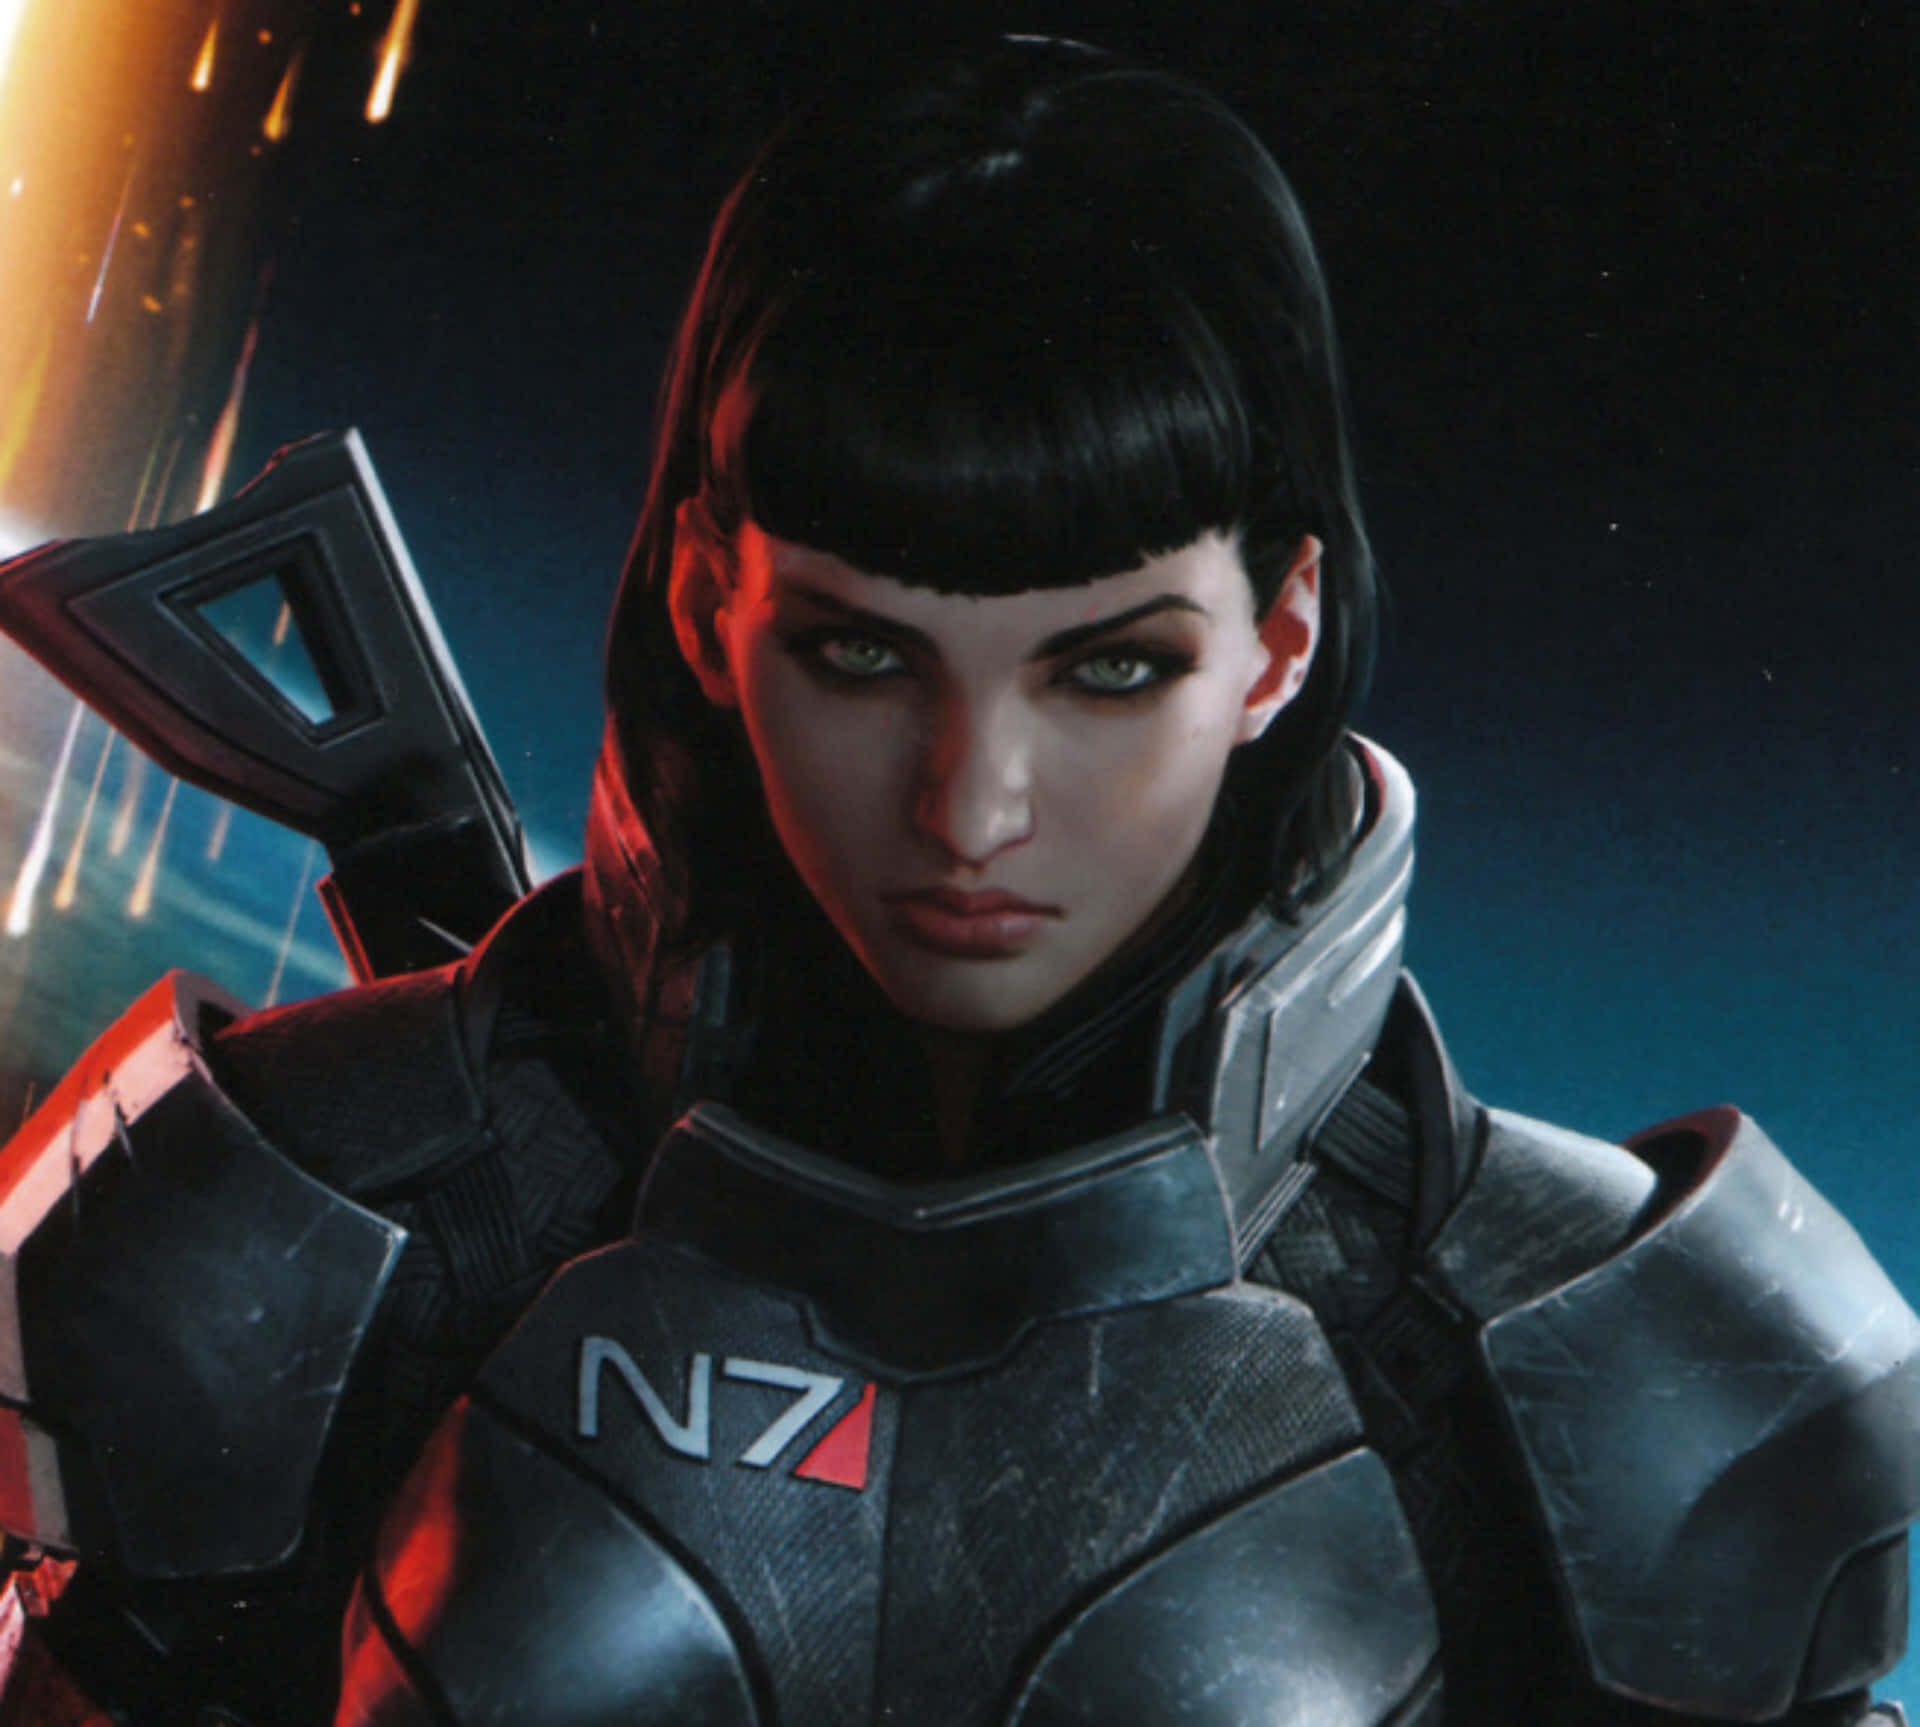 Commander Shepard wielding a gun in Mass Effect universe Wallpaper